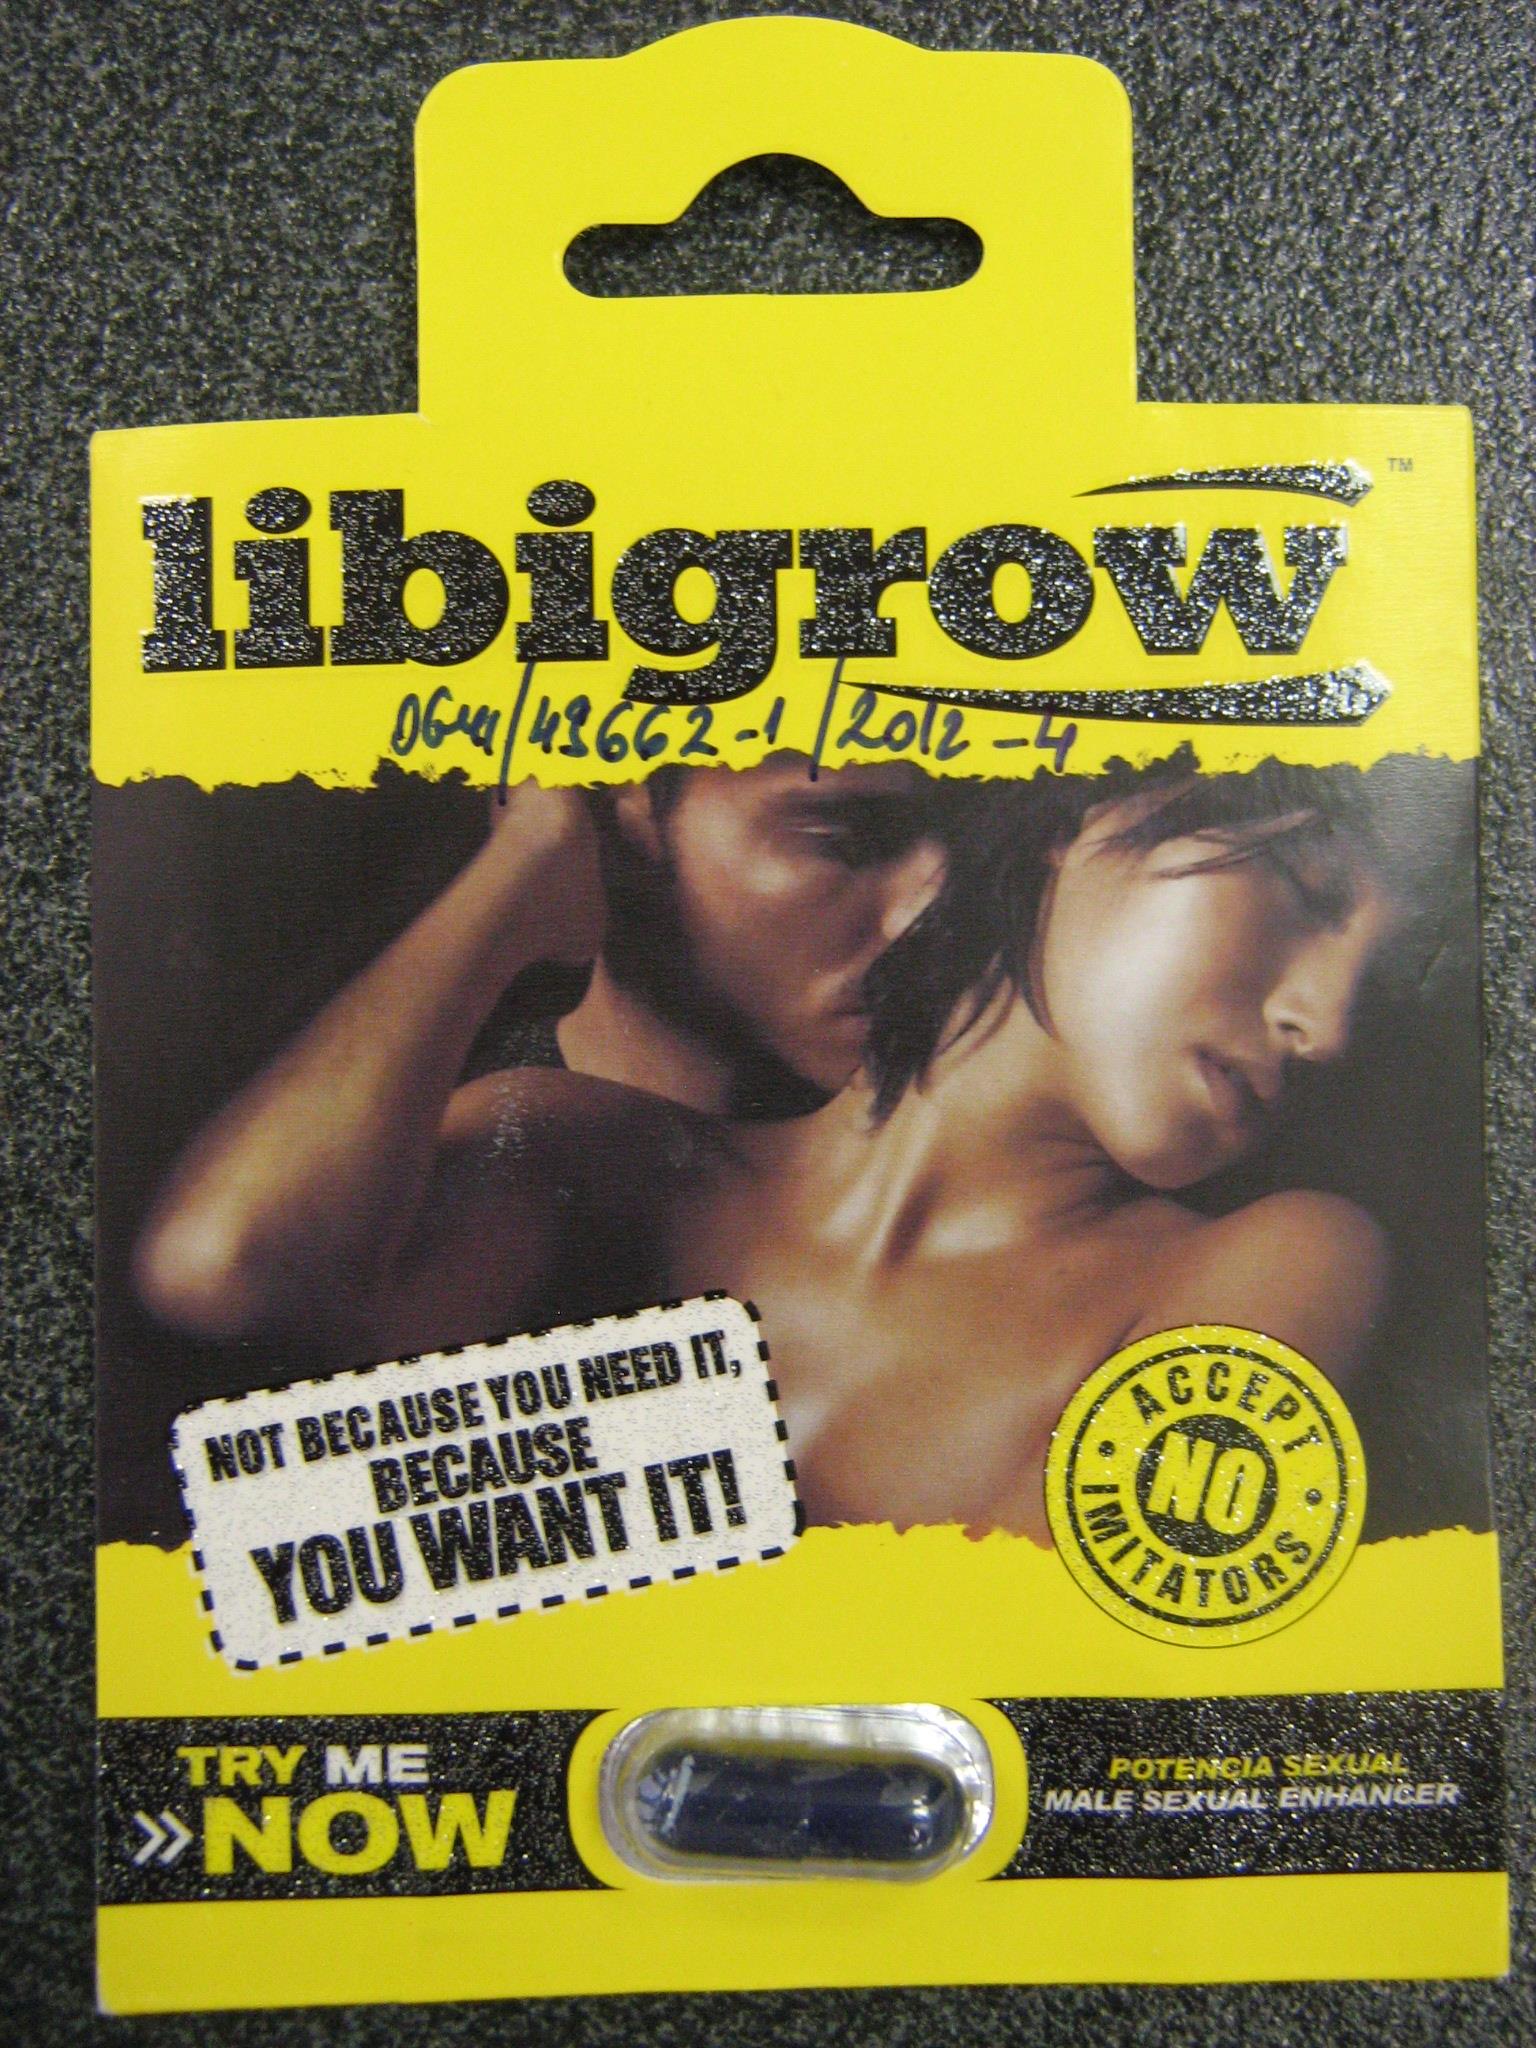 Billede af det ulovlige produkt: Libigrow